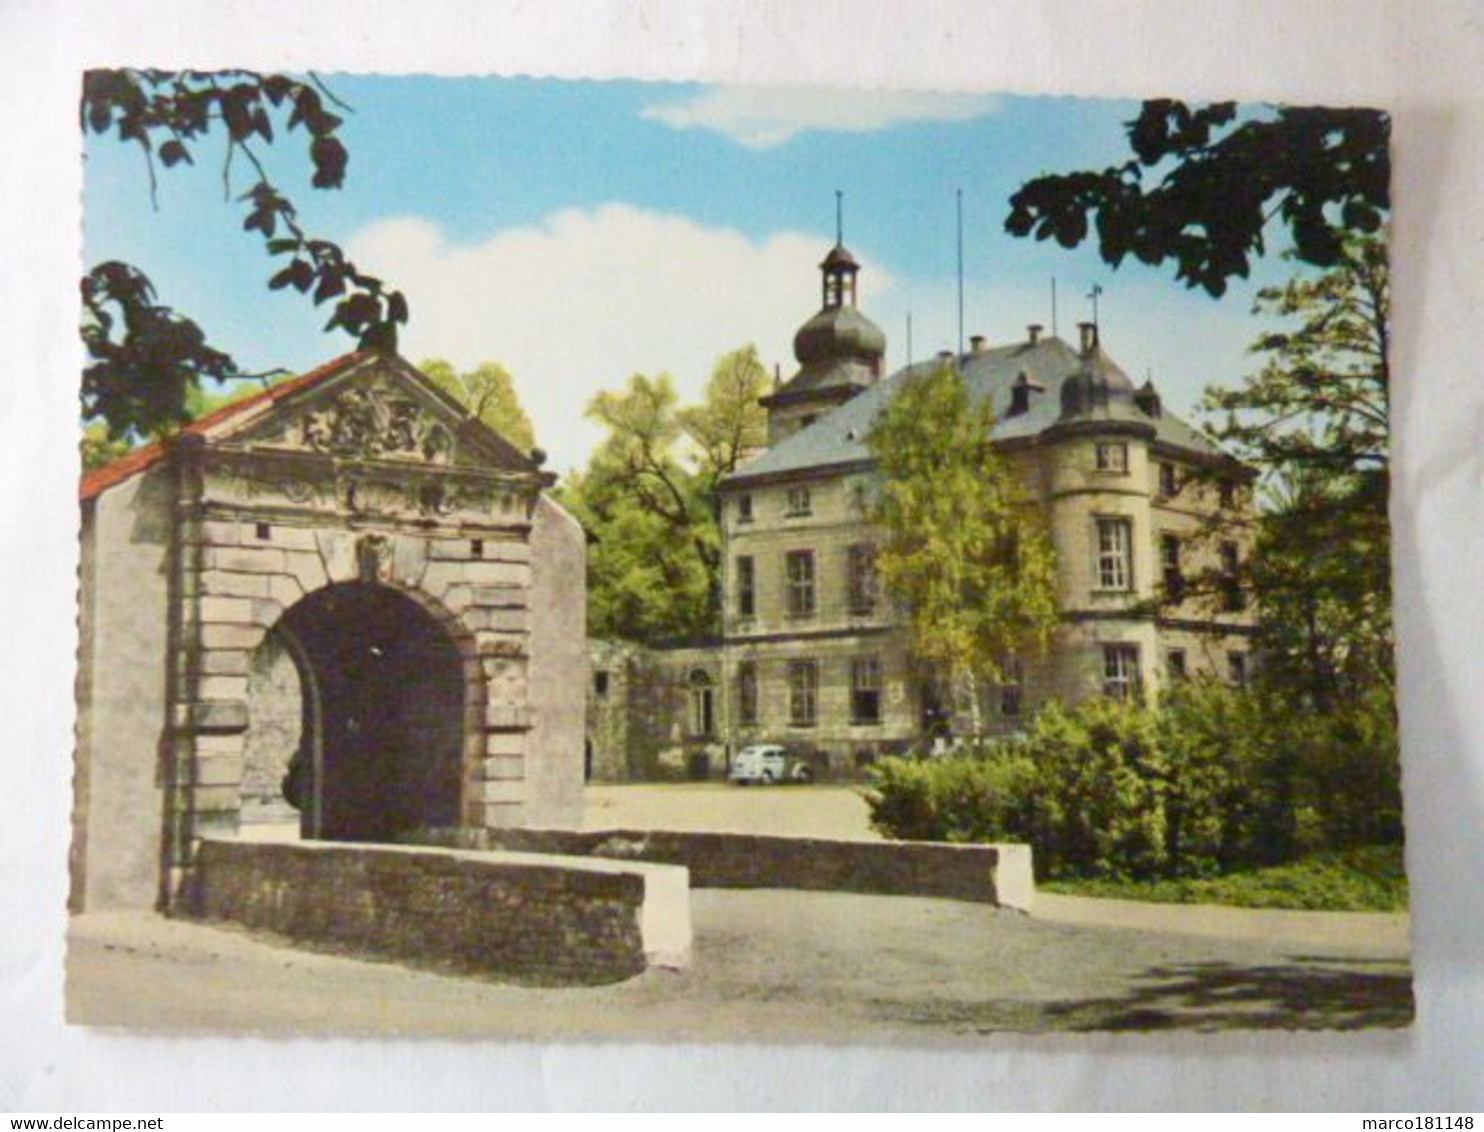 Troisdorf - Rathaus (Burg Wissen) - Troisdorf